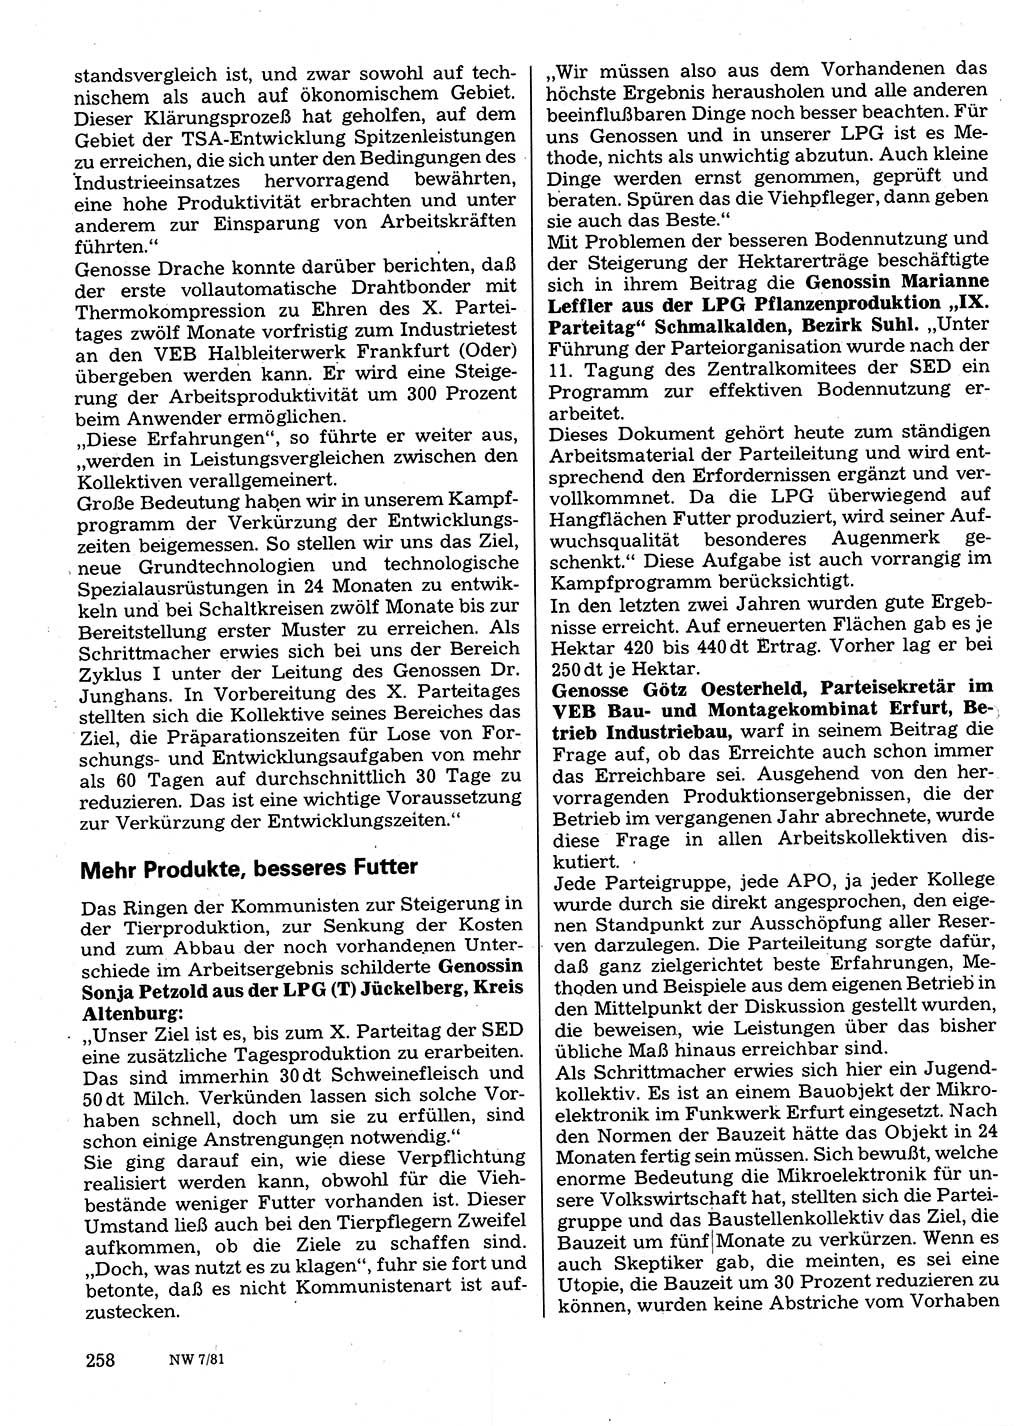 Neuer Weg (NW), Organ des Zentralkomitees (ZK) der SED (Sozialistische Einheitspartei Deutschlands) für Fragen des Parteilebens, 36. Jahrgang [Deutsche Demokratische Republik (DDR)] 1981, Seite 258 (NW ZK SED DDR 1981, S. 258)